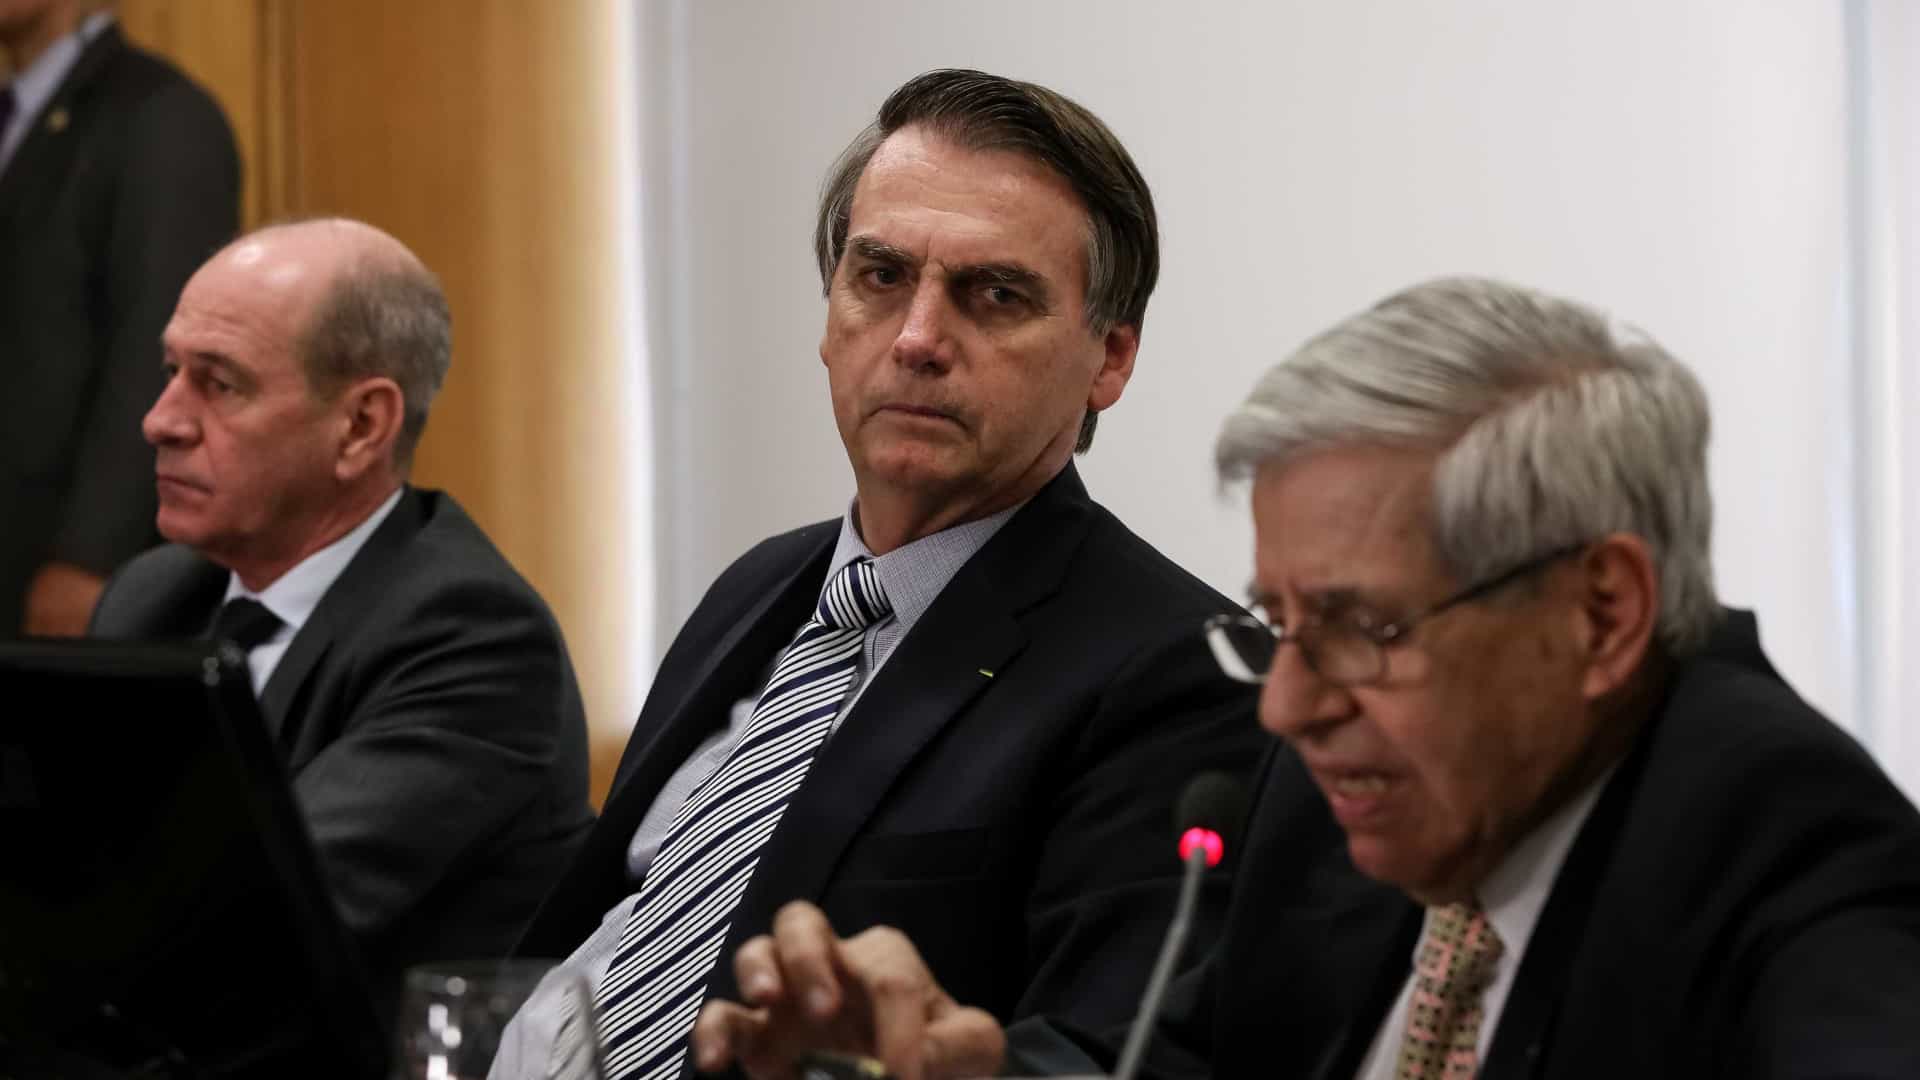 Reunião no gabinete de Bolsonaro foi gravada clandestinamente, diz revista